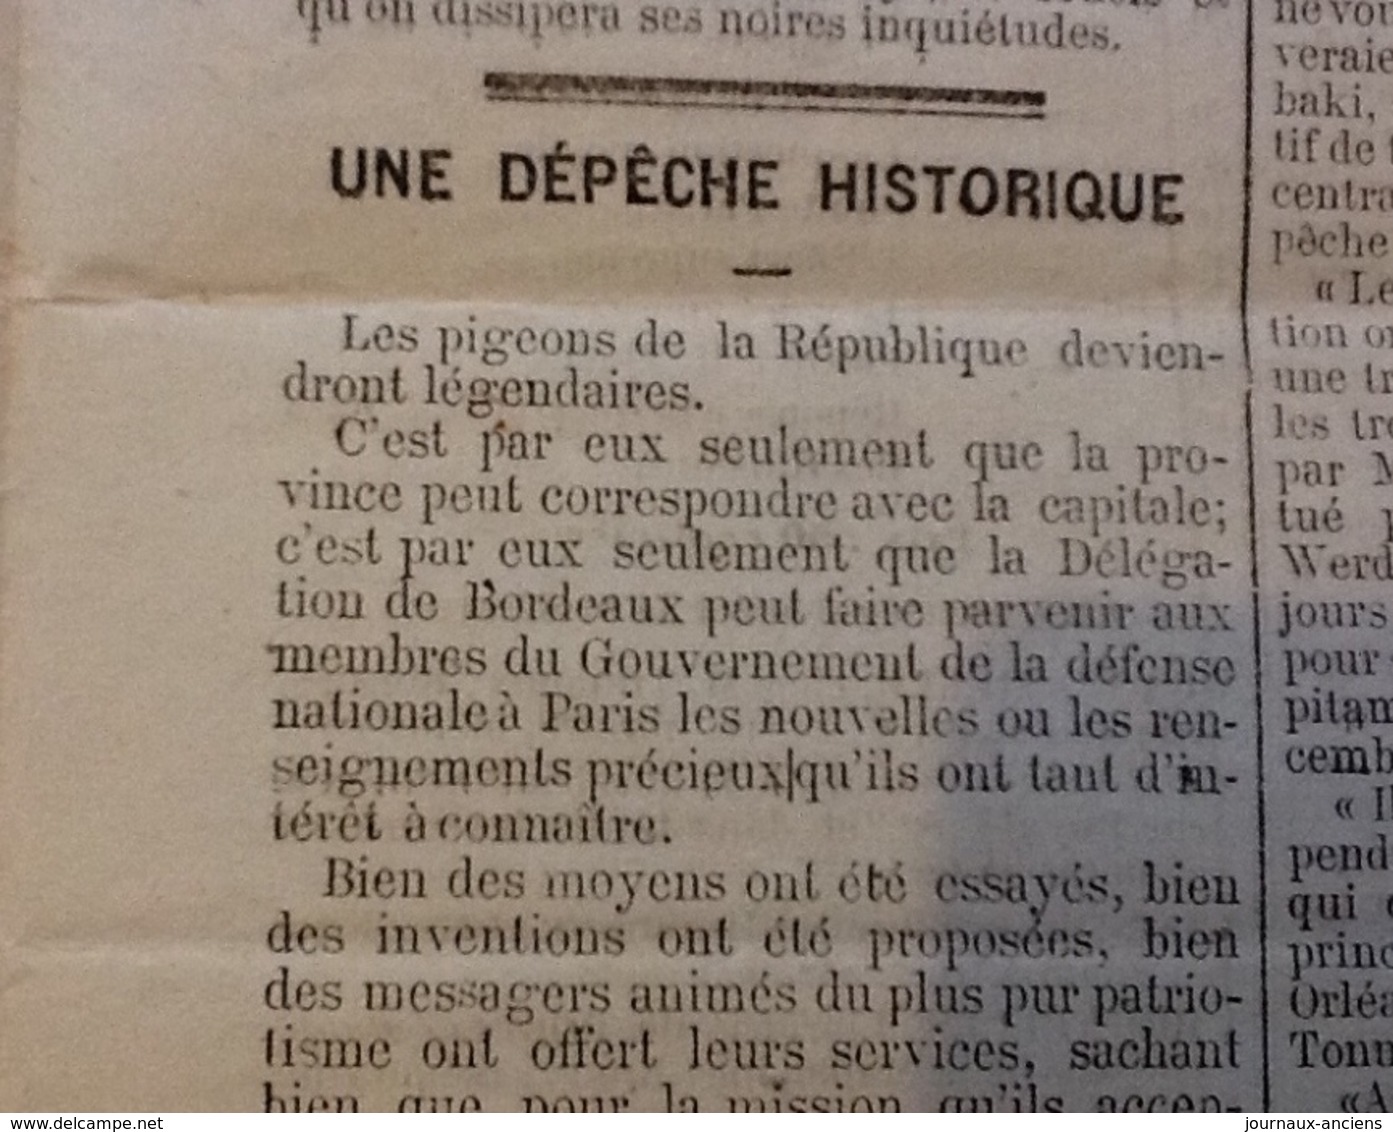 1871 Journal LA LIBERTÉ du 18 Janvier - GUERRE DE 1870 - UNE JOURNÉE DÉCISIVE - SIÈGE DE PARIS - CAMP DE CONLIE - PIGEON